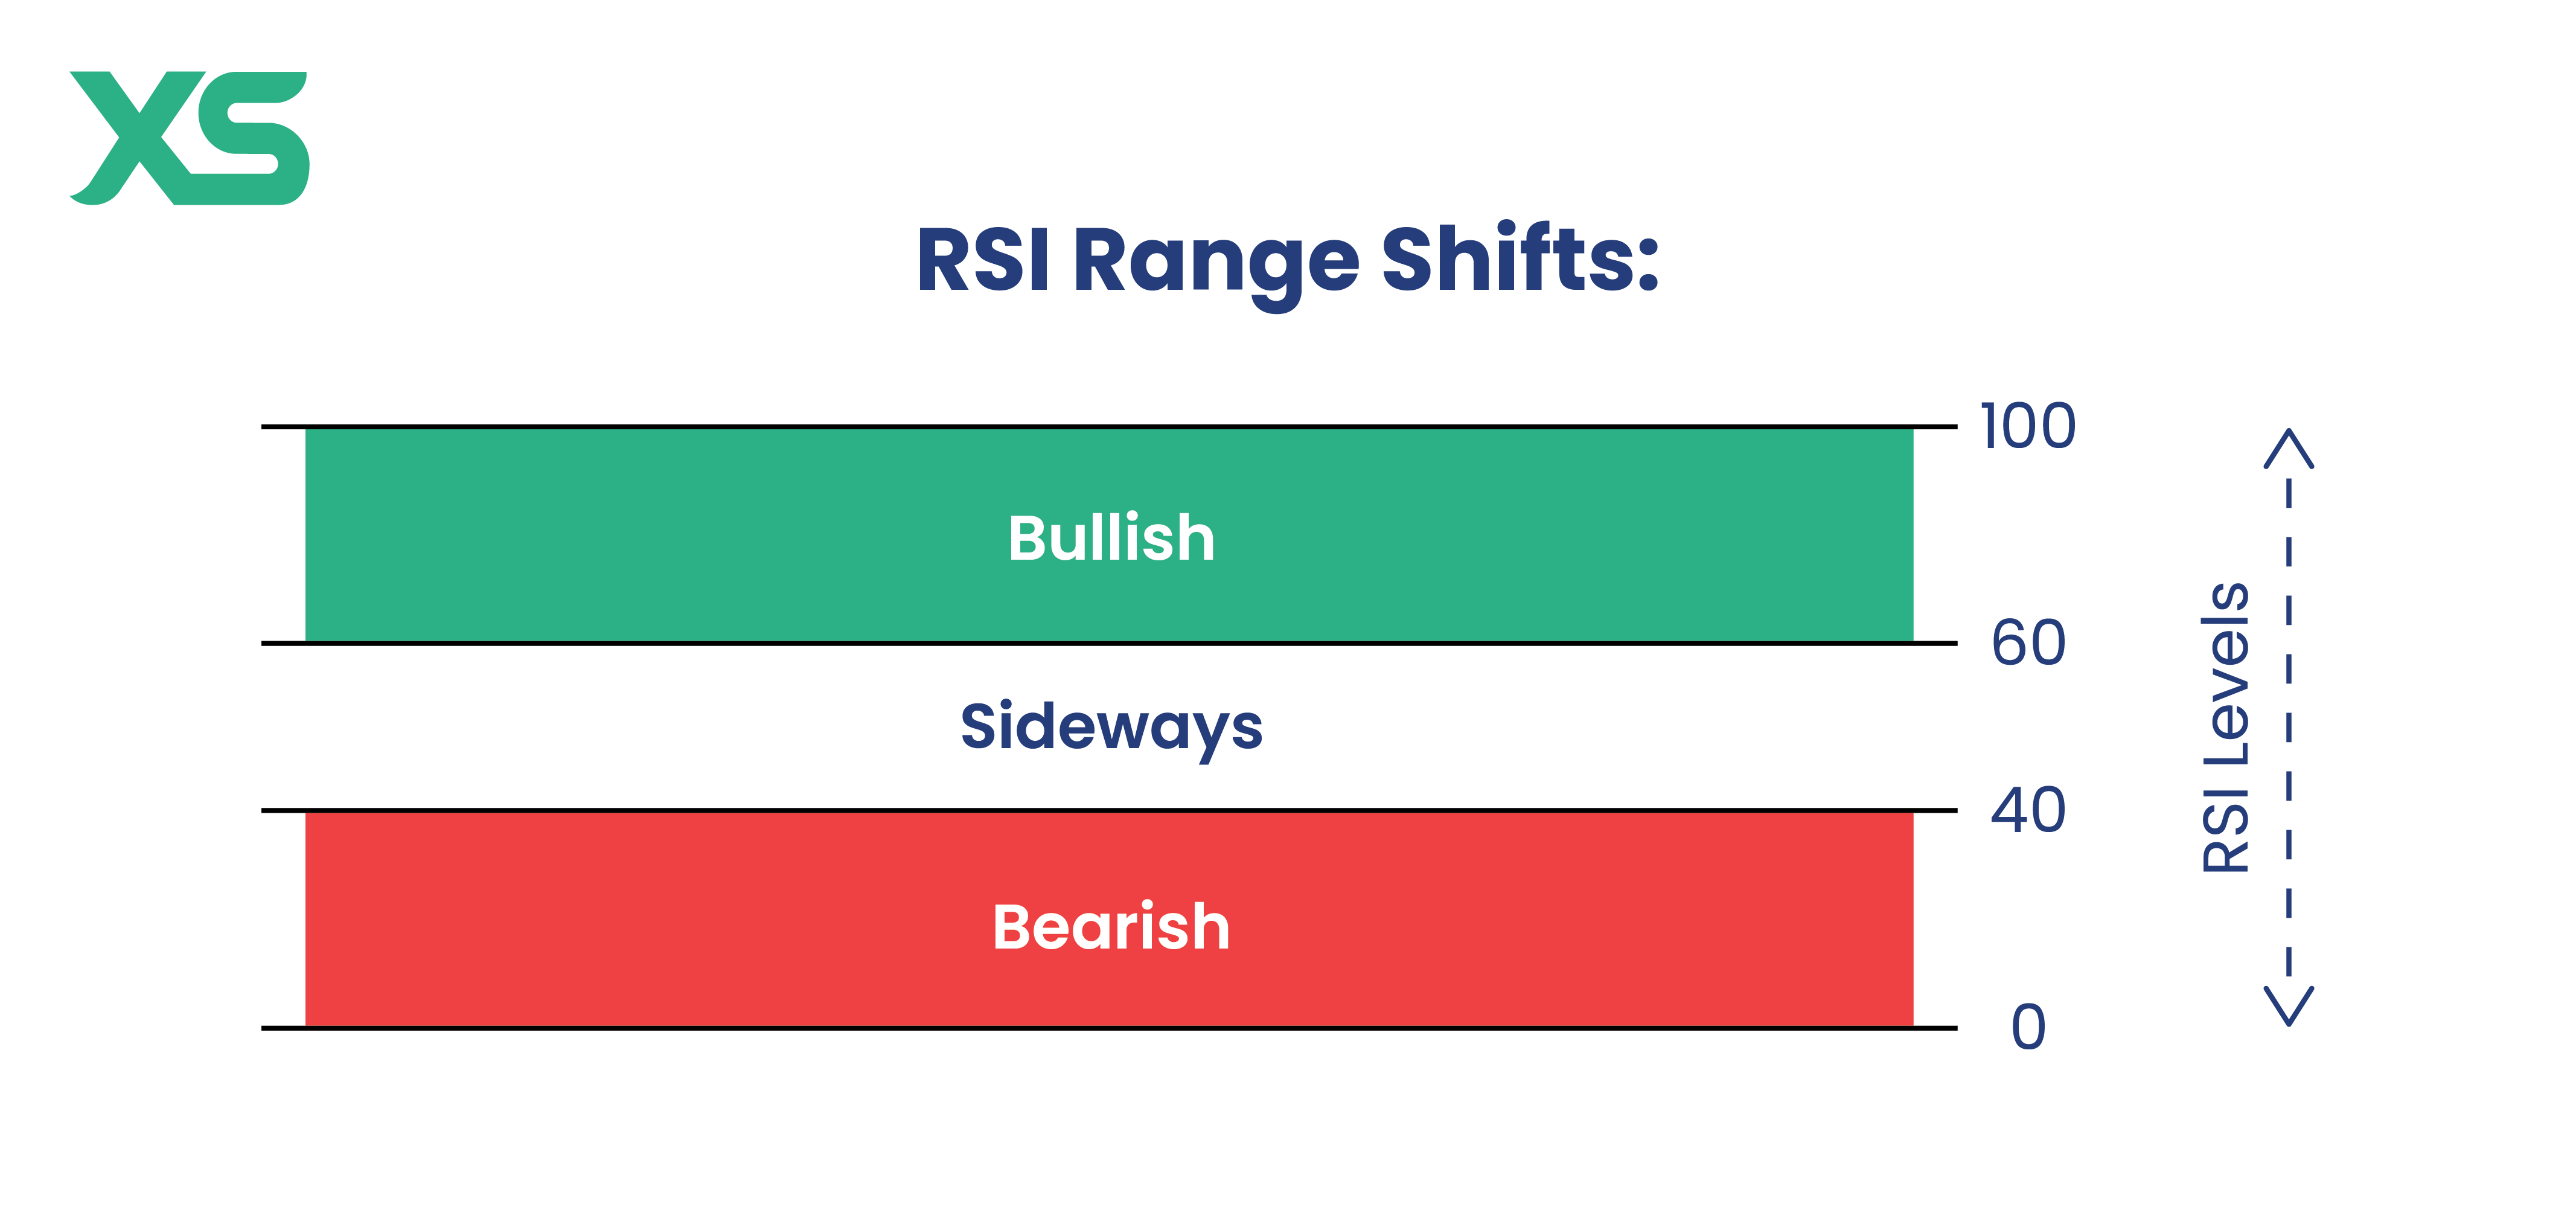 RSI range shifts